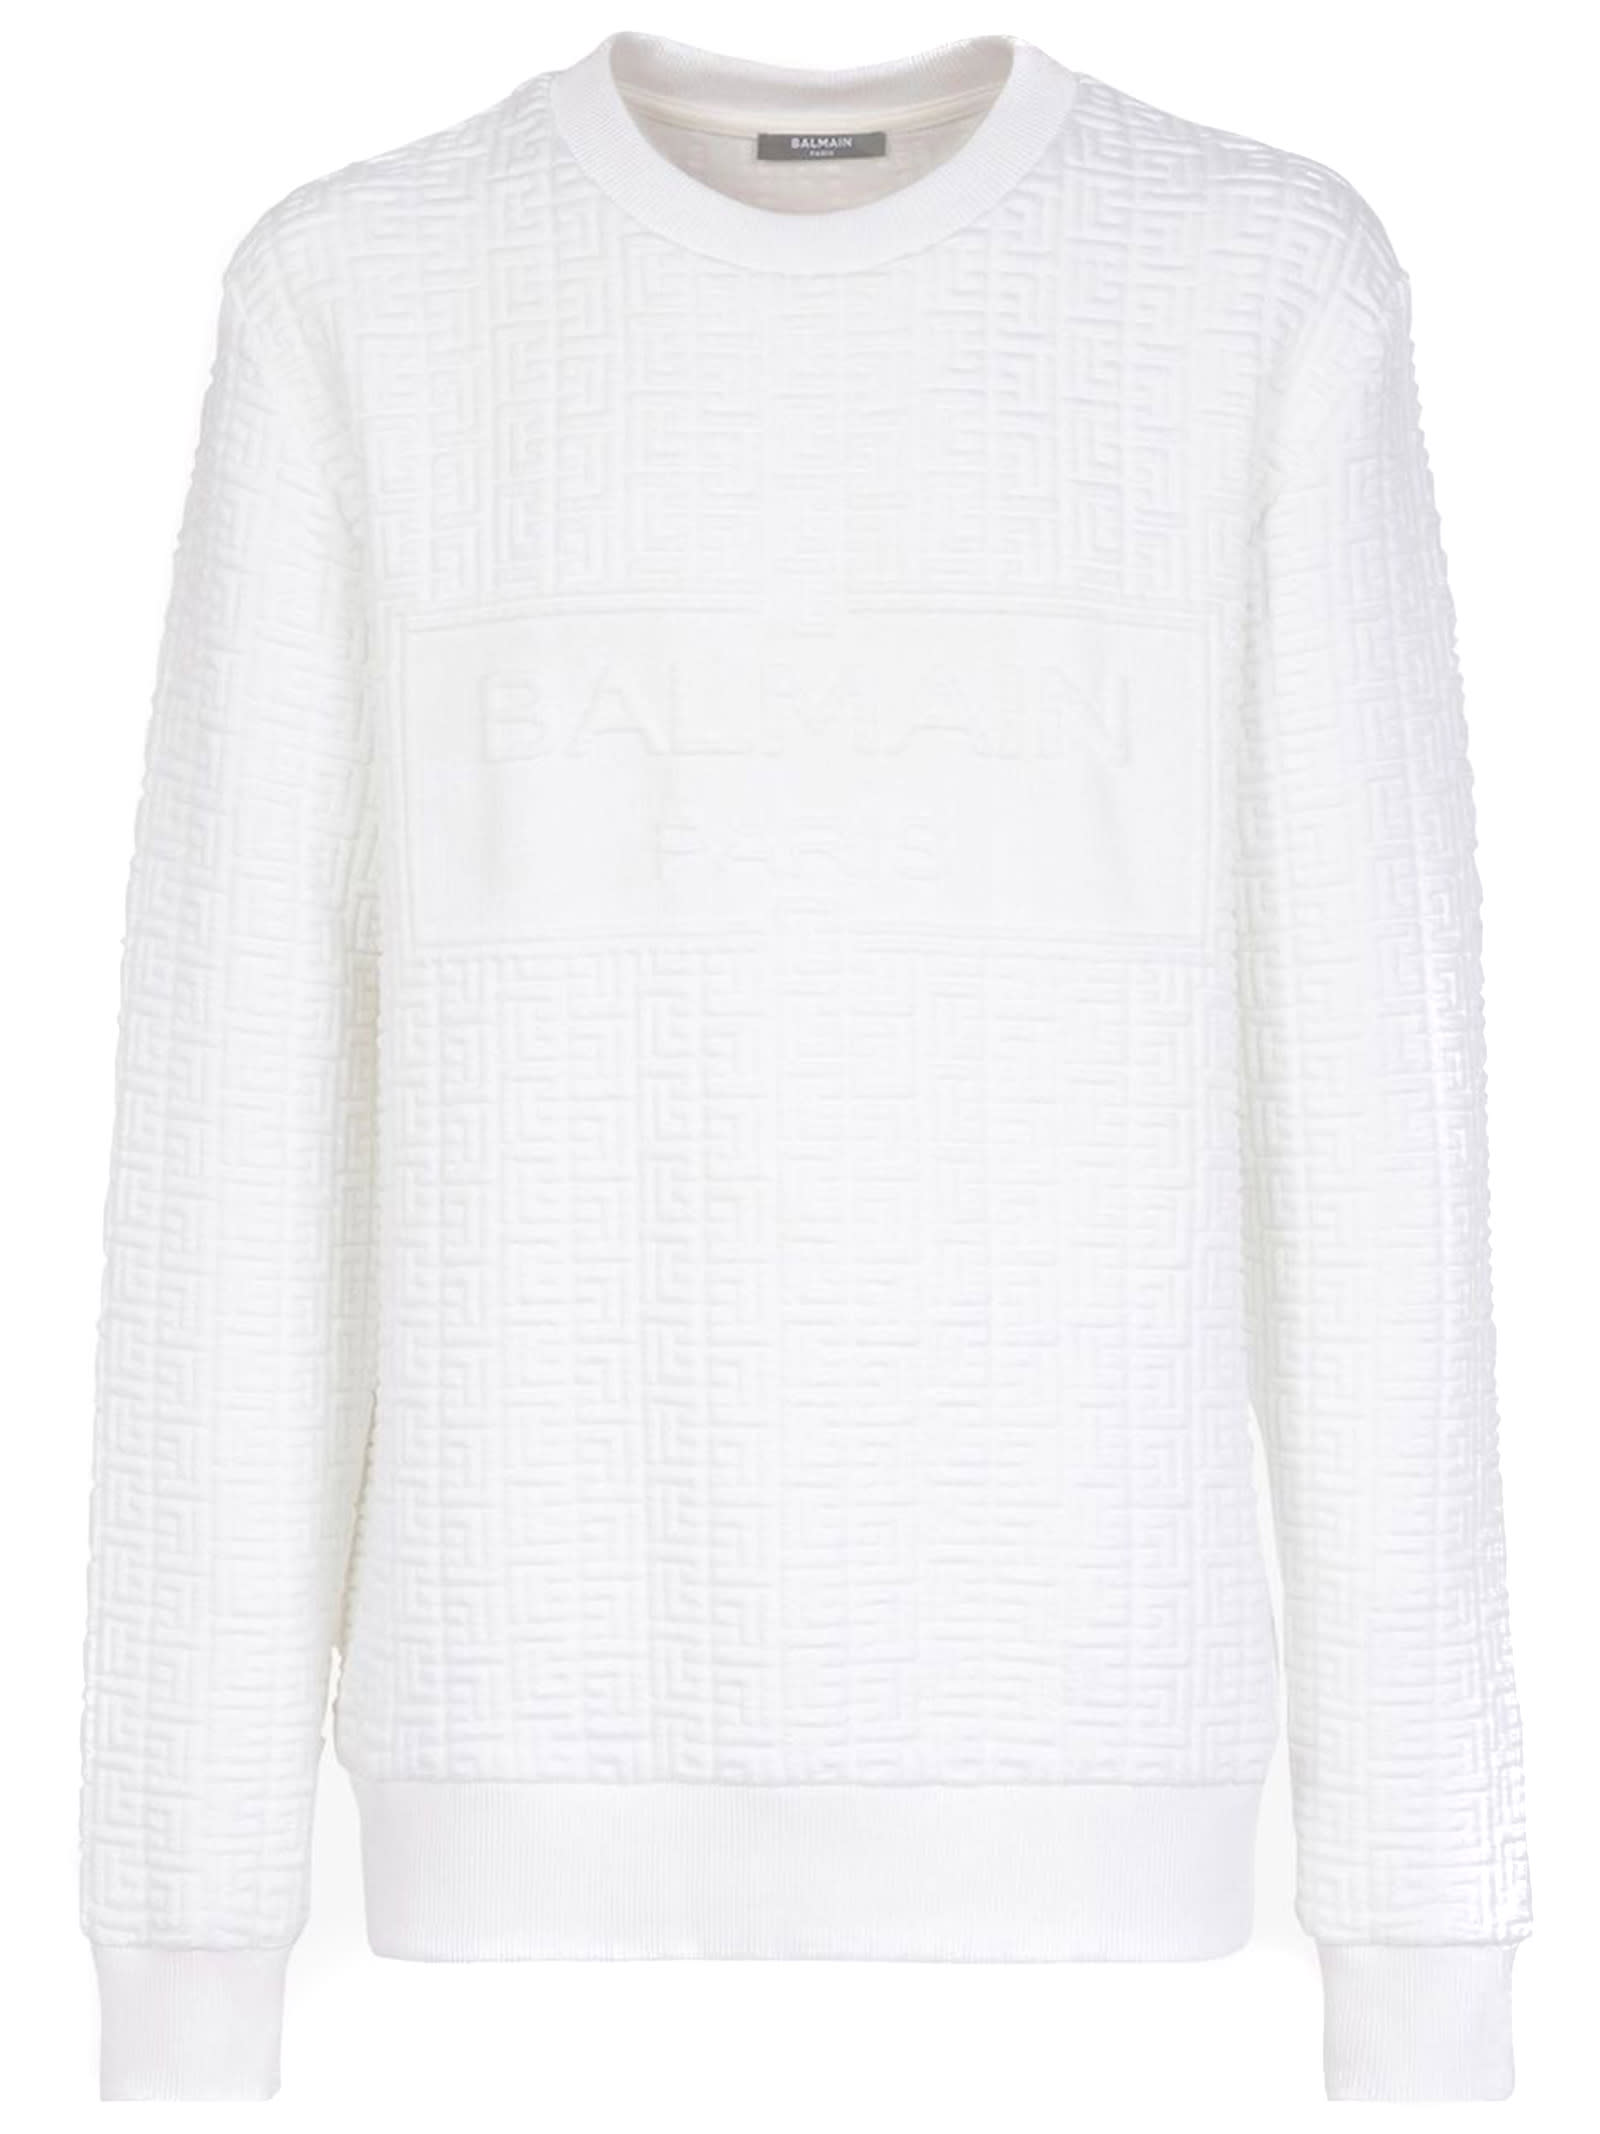 Balmain Optic White Textured Sweatshirt